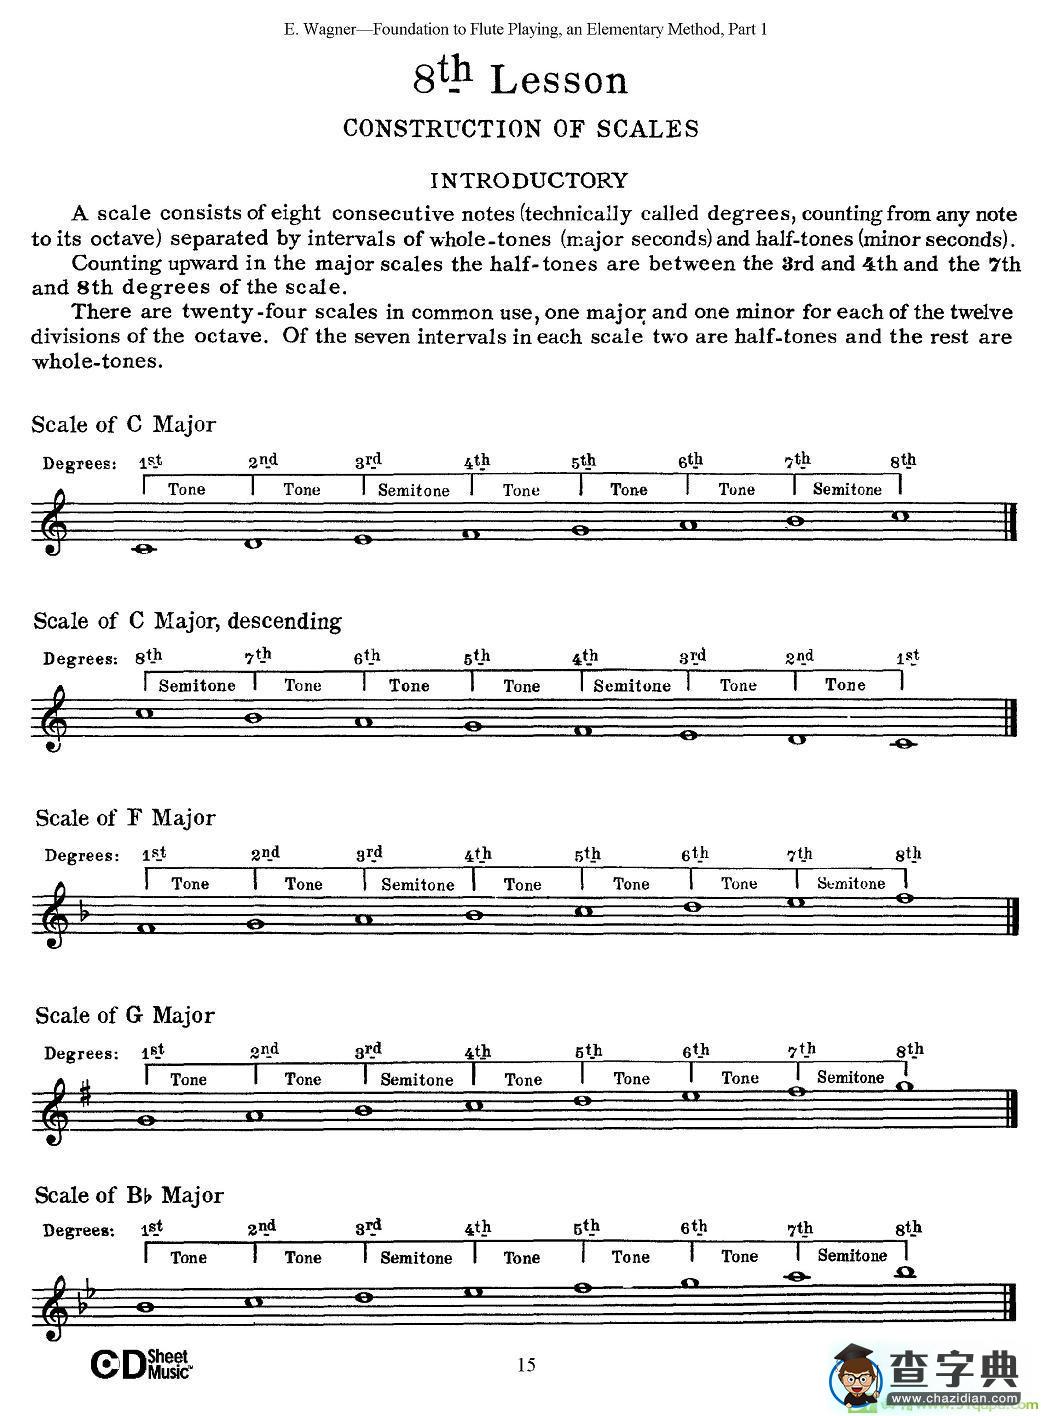 长笛演奏基础教程练习长笛谱(E·Wagner作曲)